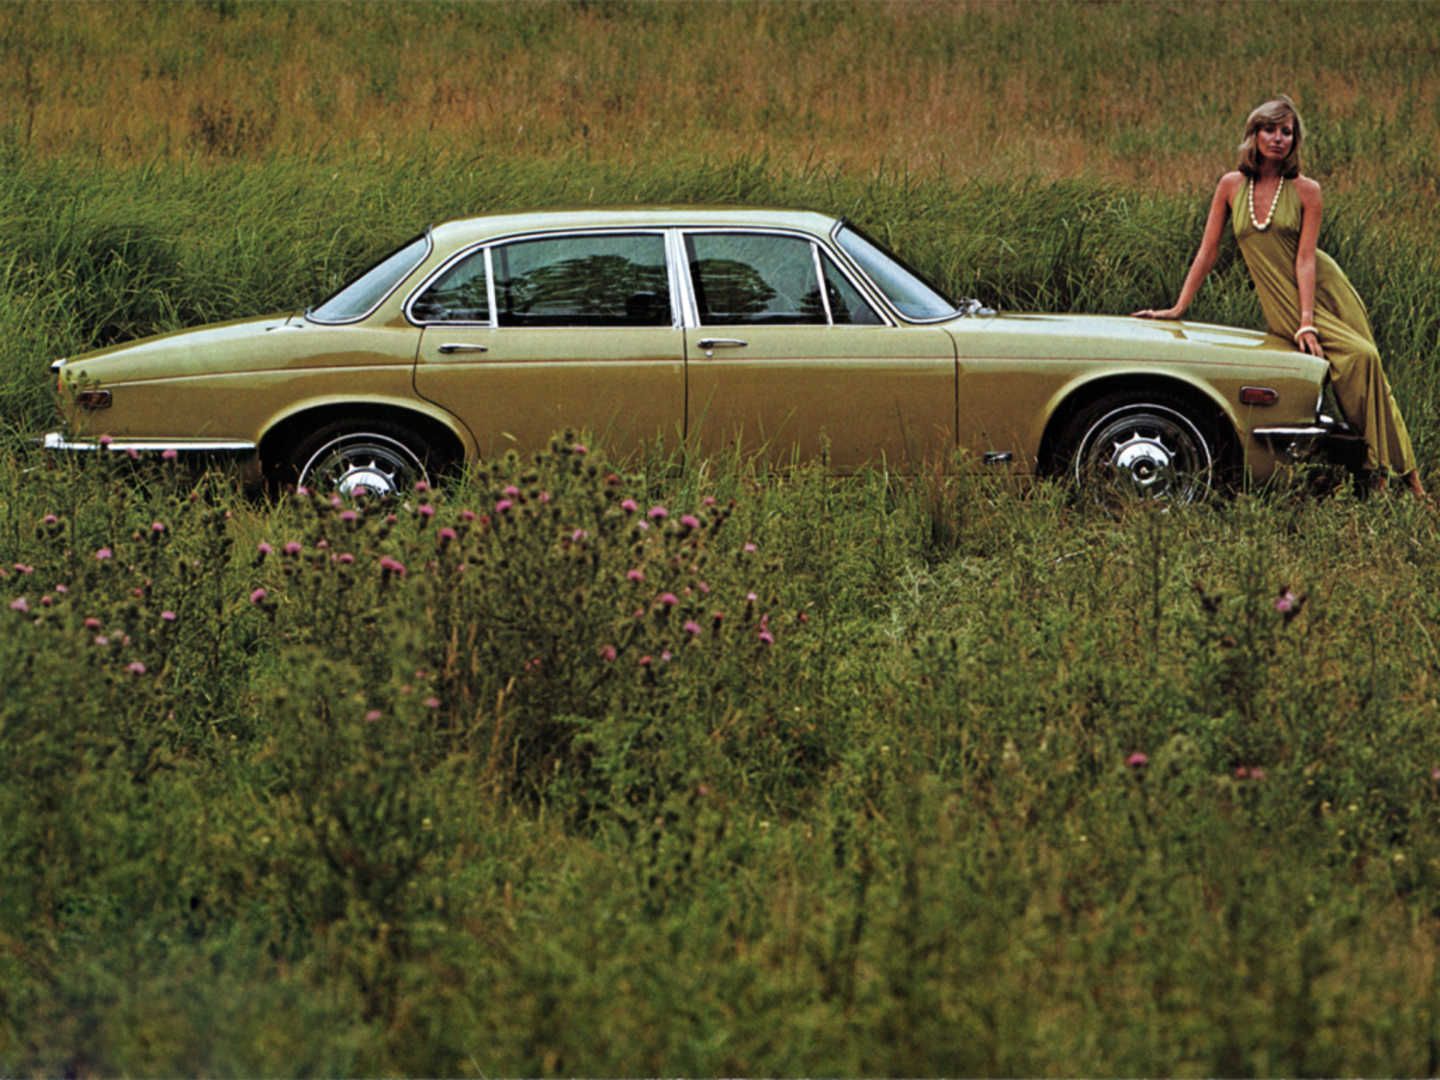 Jaguar XJ verte de profil dans un champ avec une femme sur le capot